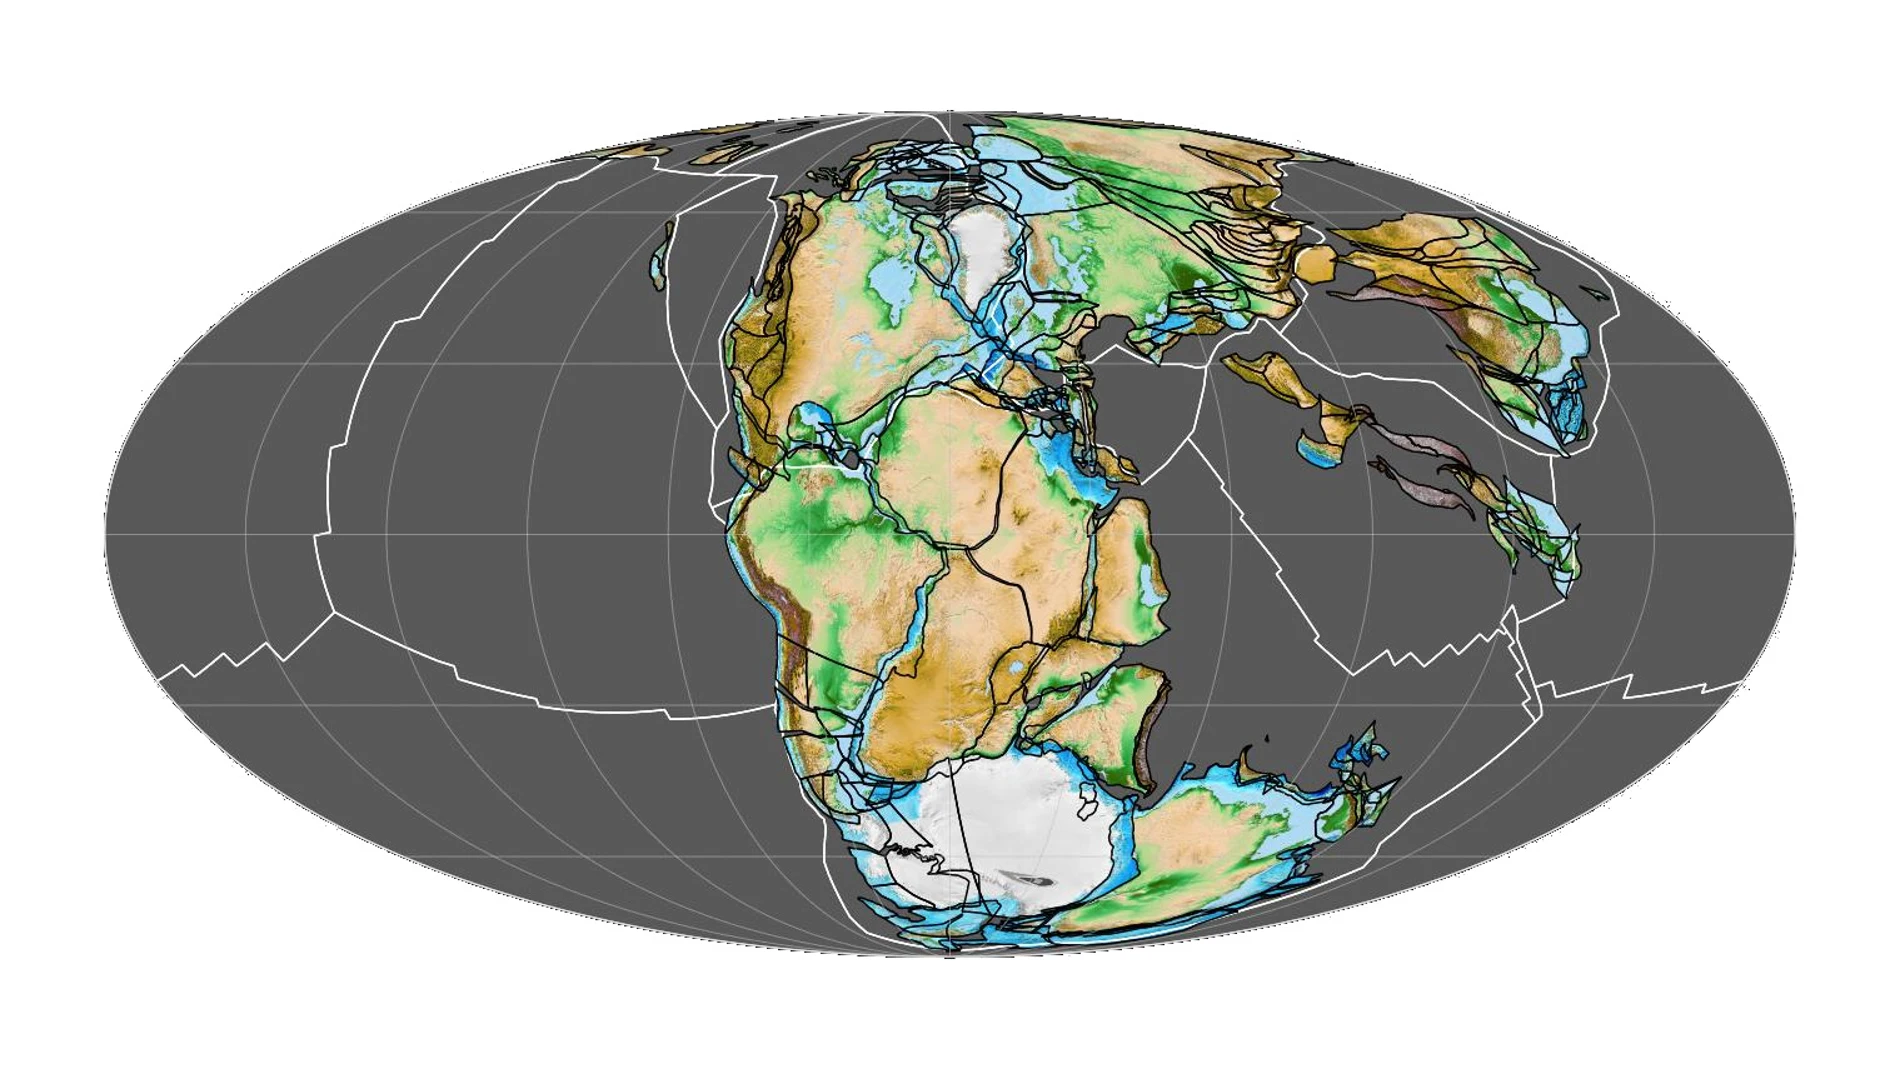 Una reconstrucción del supercontinente Pangea, con el aspecto que debía tener a finales del periodo Triásico, hace 200 millones de años. Los continentes actuales están sobreimpuestos en color, para que podamos identificar los muchos cambios que han tenido lugar desde entonces.